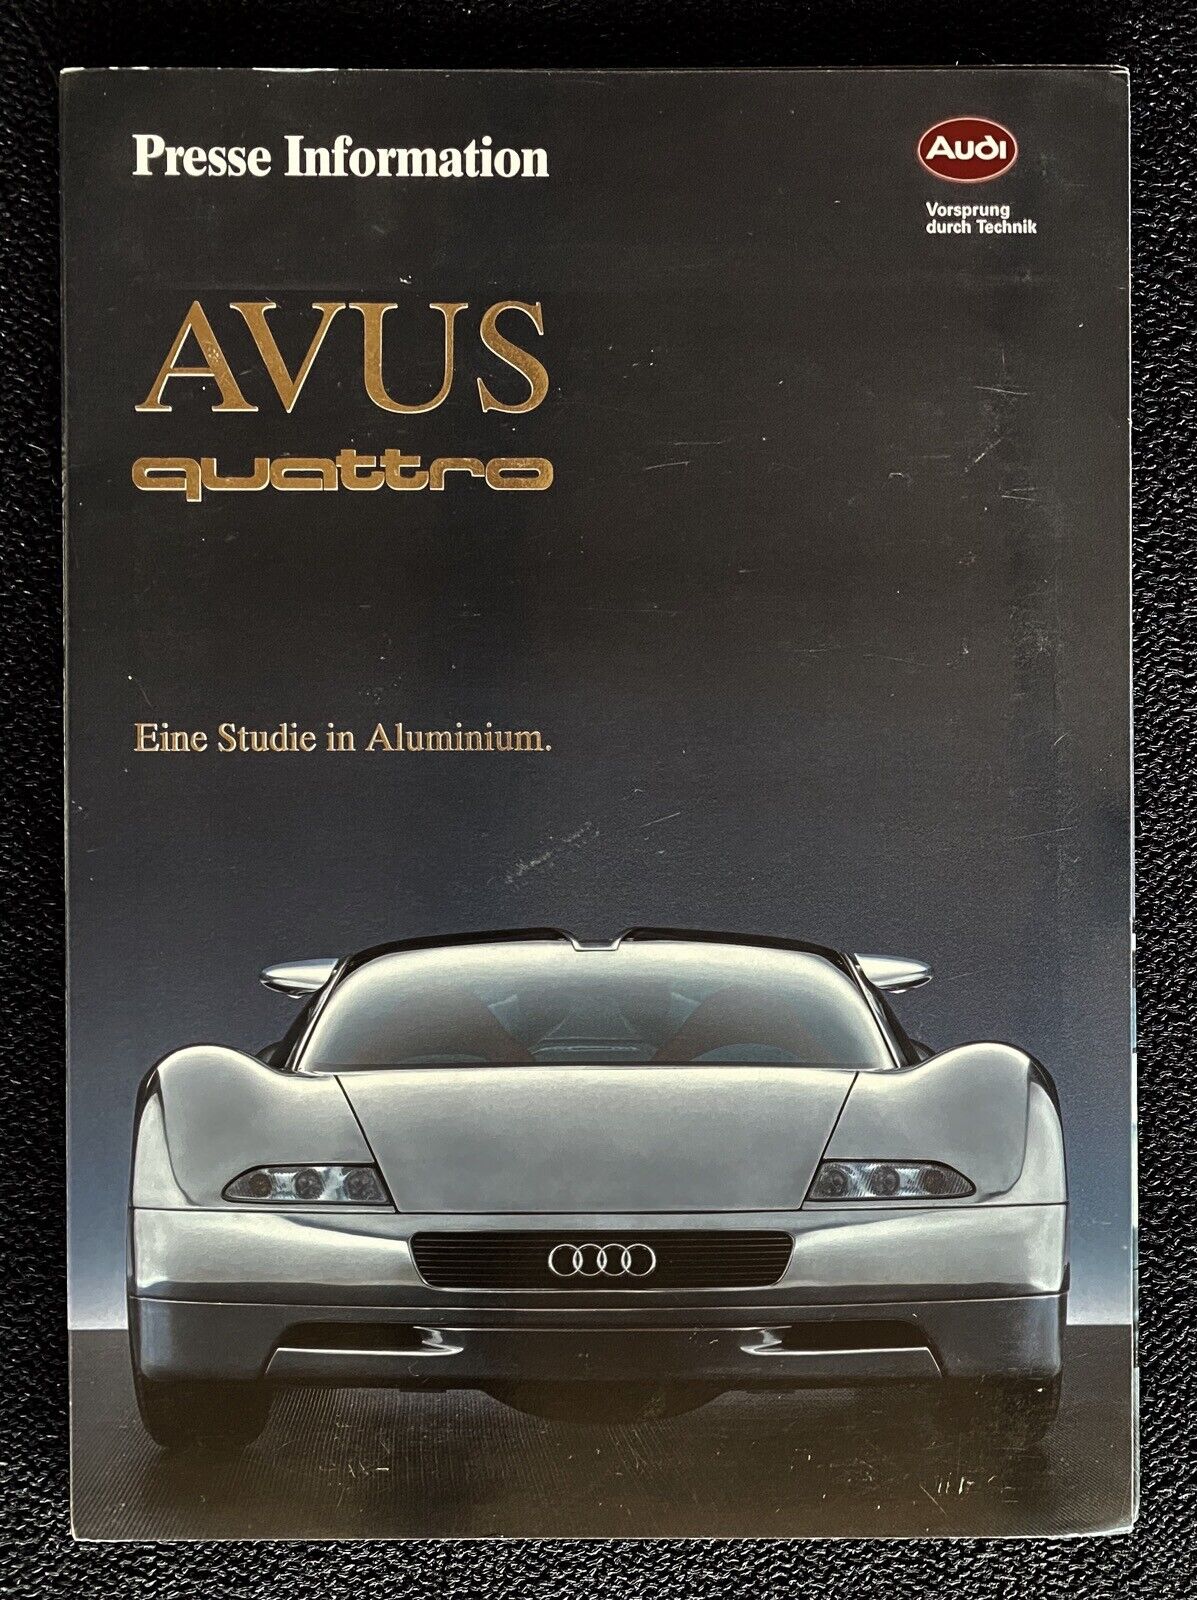 1992 Audi AVUS Quattro Aluminum Concept Car Press Kit Original Factory Photos 